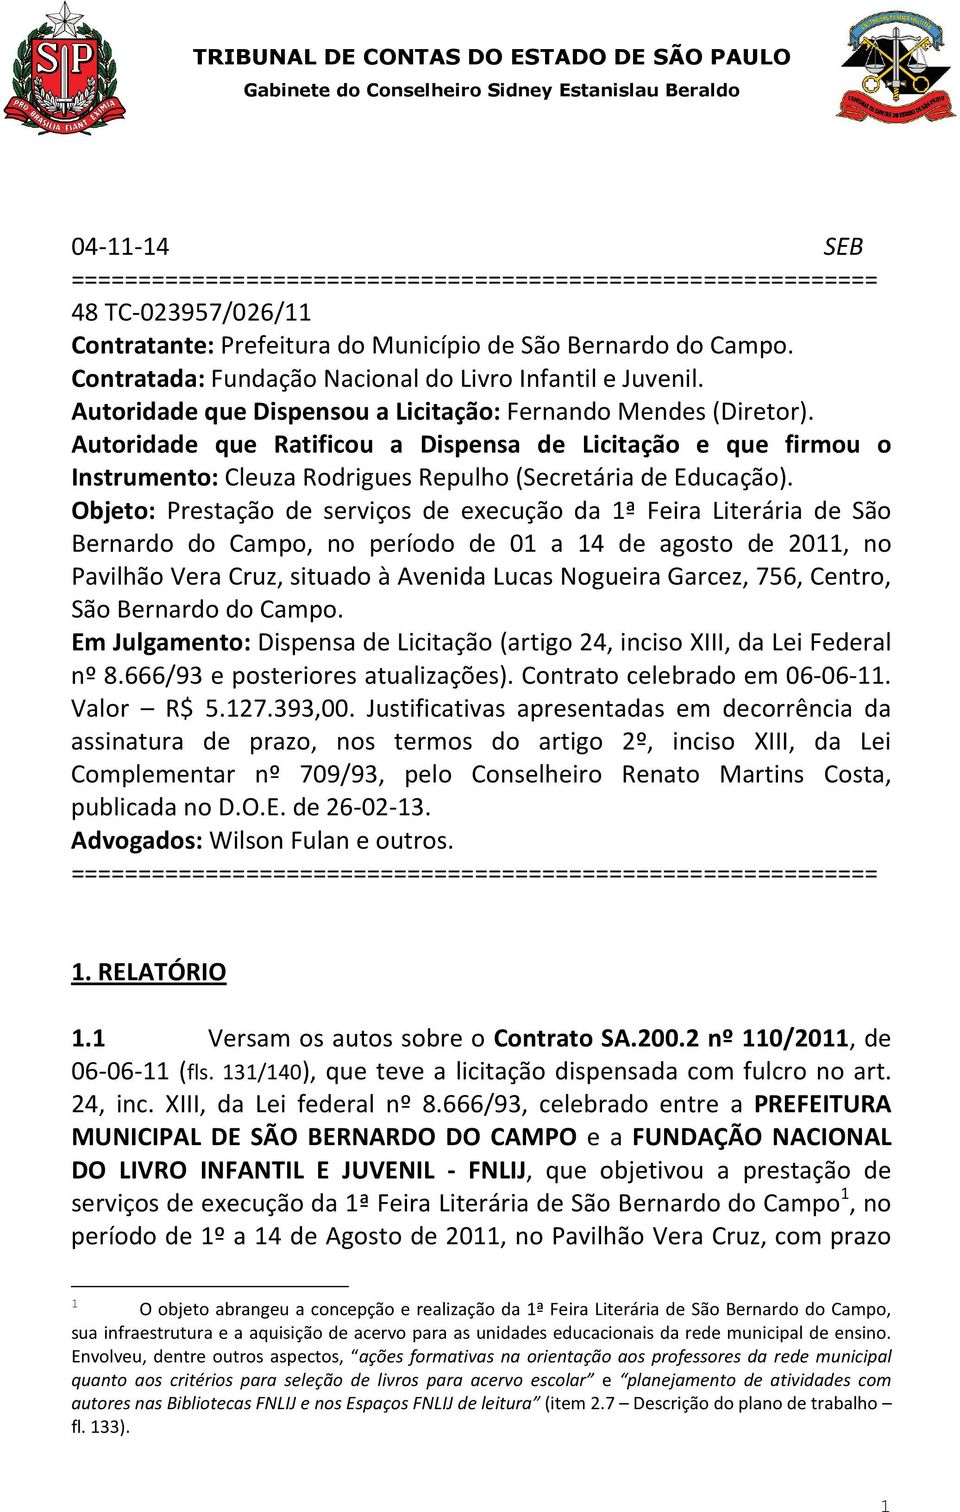 Autoridade que Ratificou a Dispensa de Licitação e que firmou o Instrumento: Cleuza Rodrigues Repulho (Secretária de Educação).